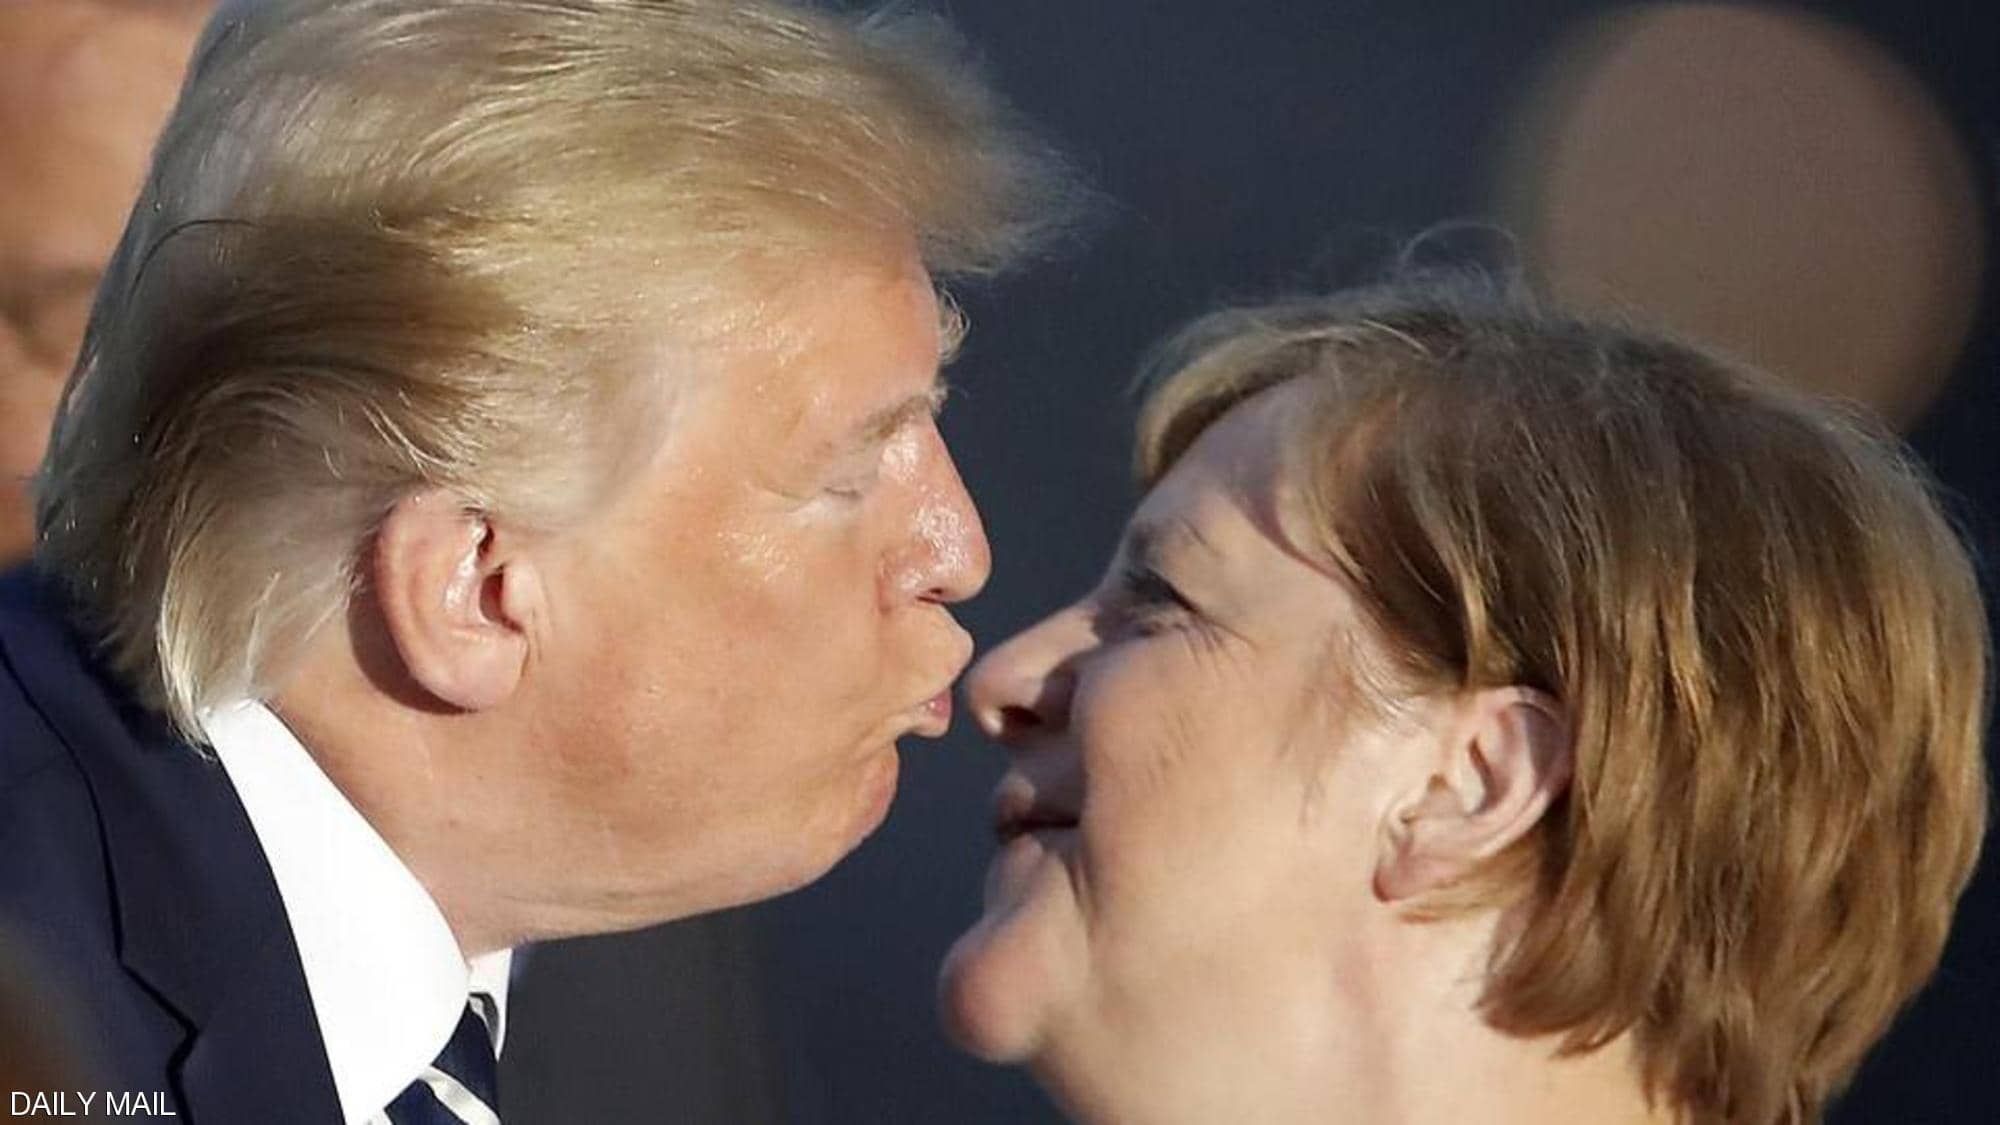 “بالصور” قبلة غريبة من ترامب في أنف ميركل بحضور الزعماء تثير استغراب الجميع وسيدة فرنسا تطبع قبلة أخرى على خده